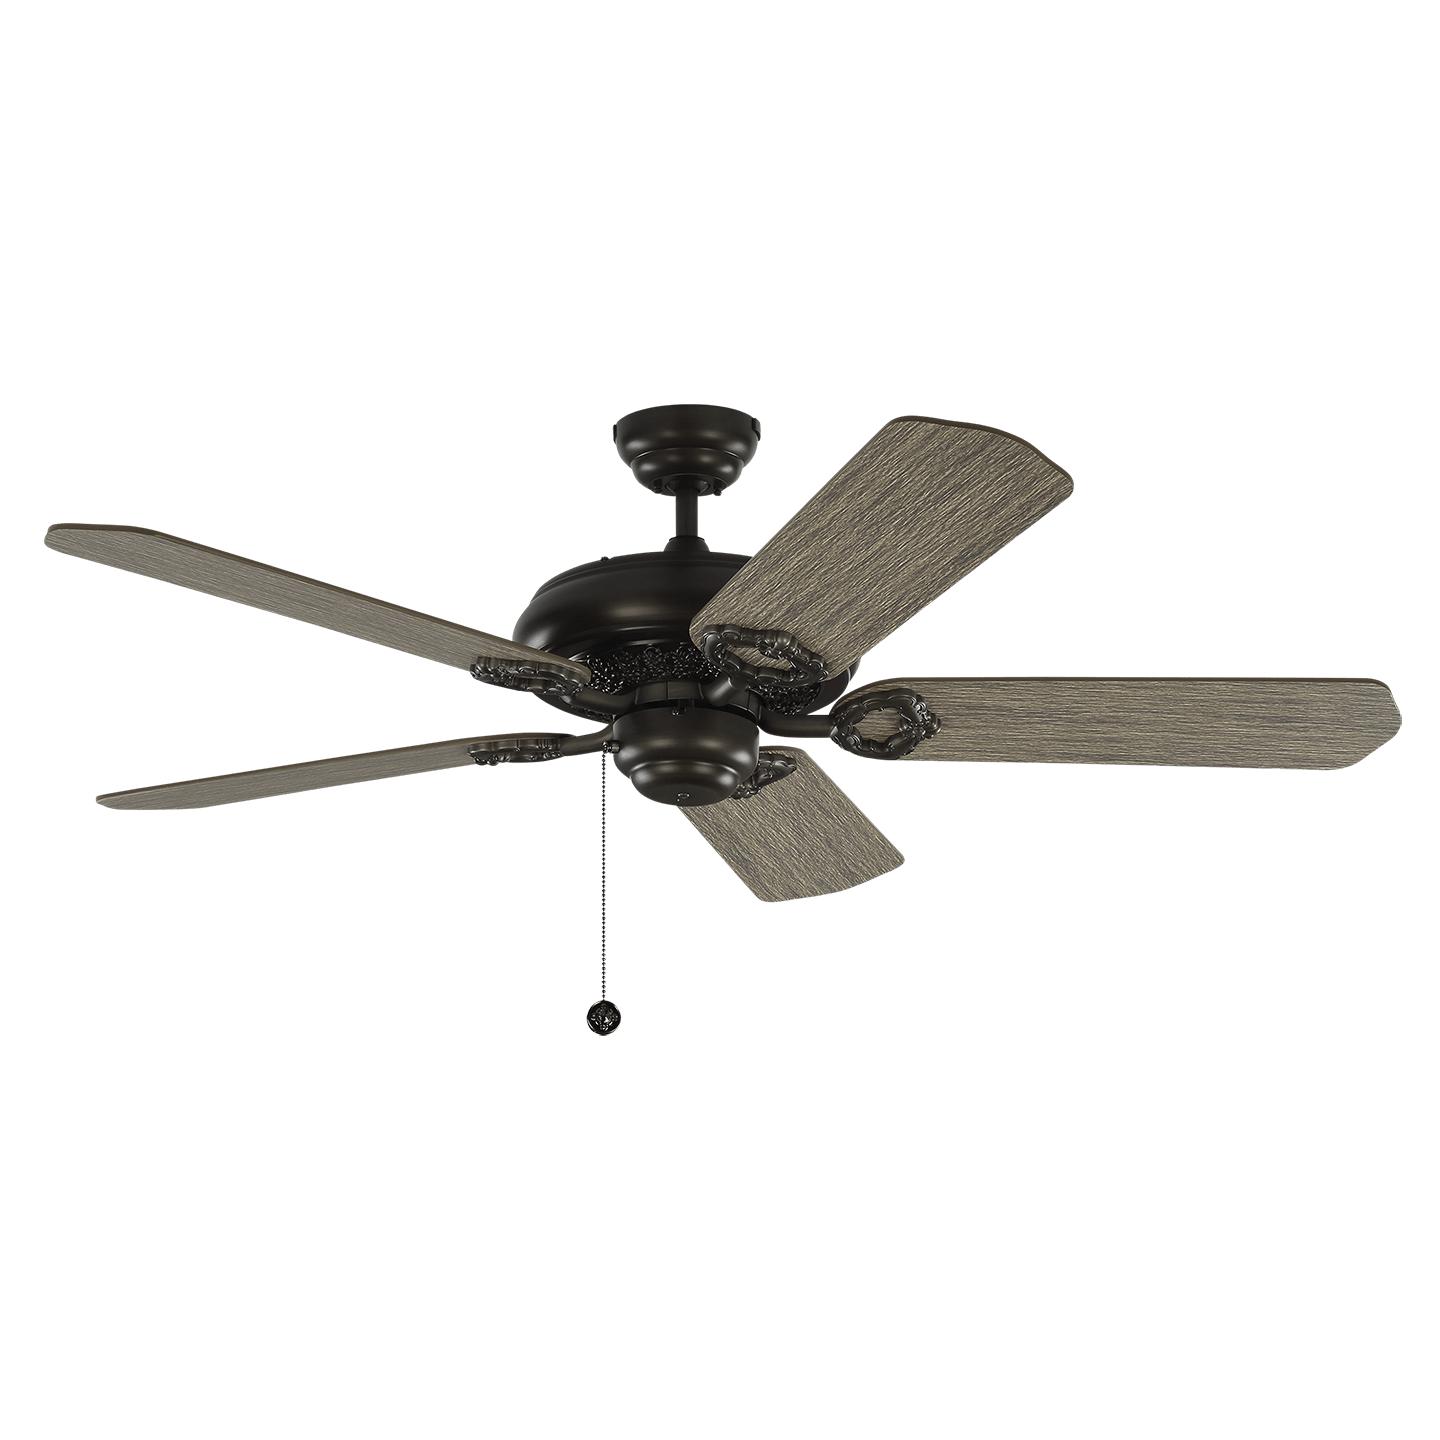 Купить Потолочный вентилятор York 52" Ceiling Fan в интернет-магазине roooms.ru